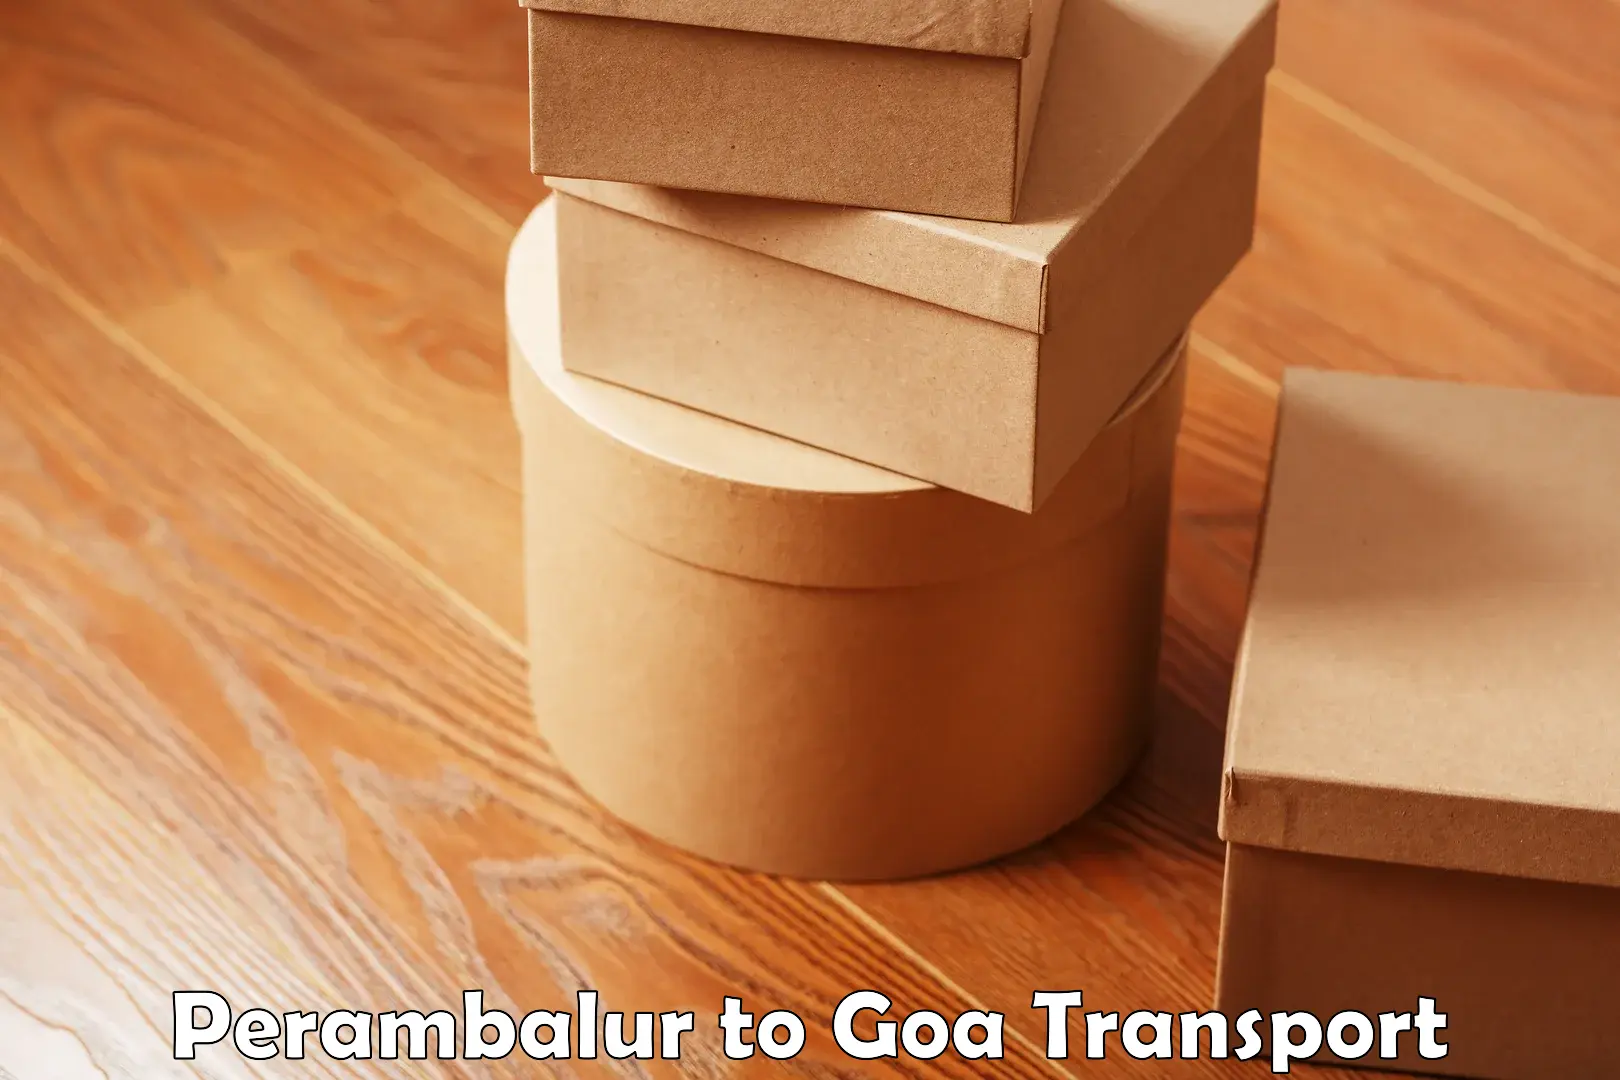 Two wheeler parcel service Perambalur to Ponda